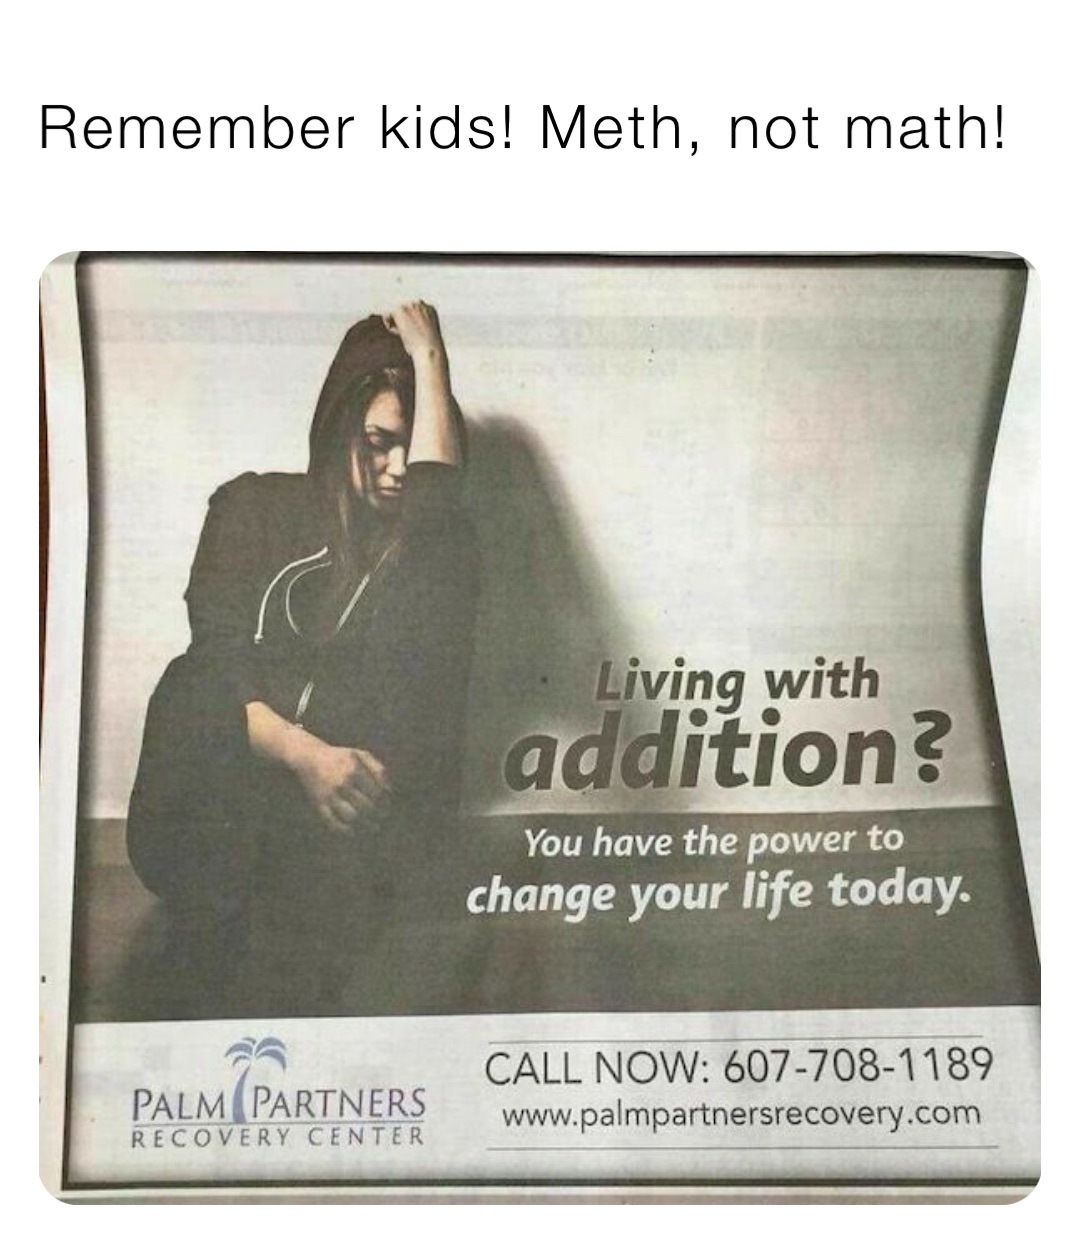 Remember kids! Meth, not math!